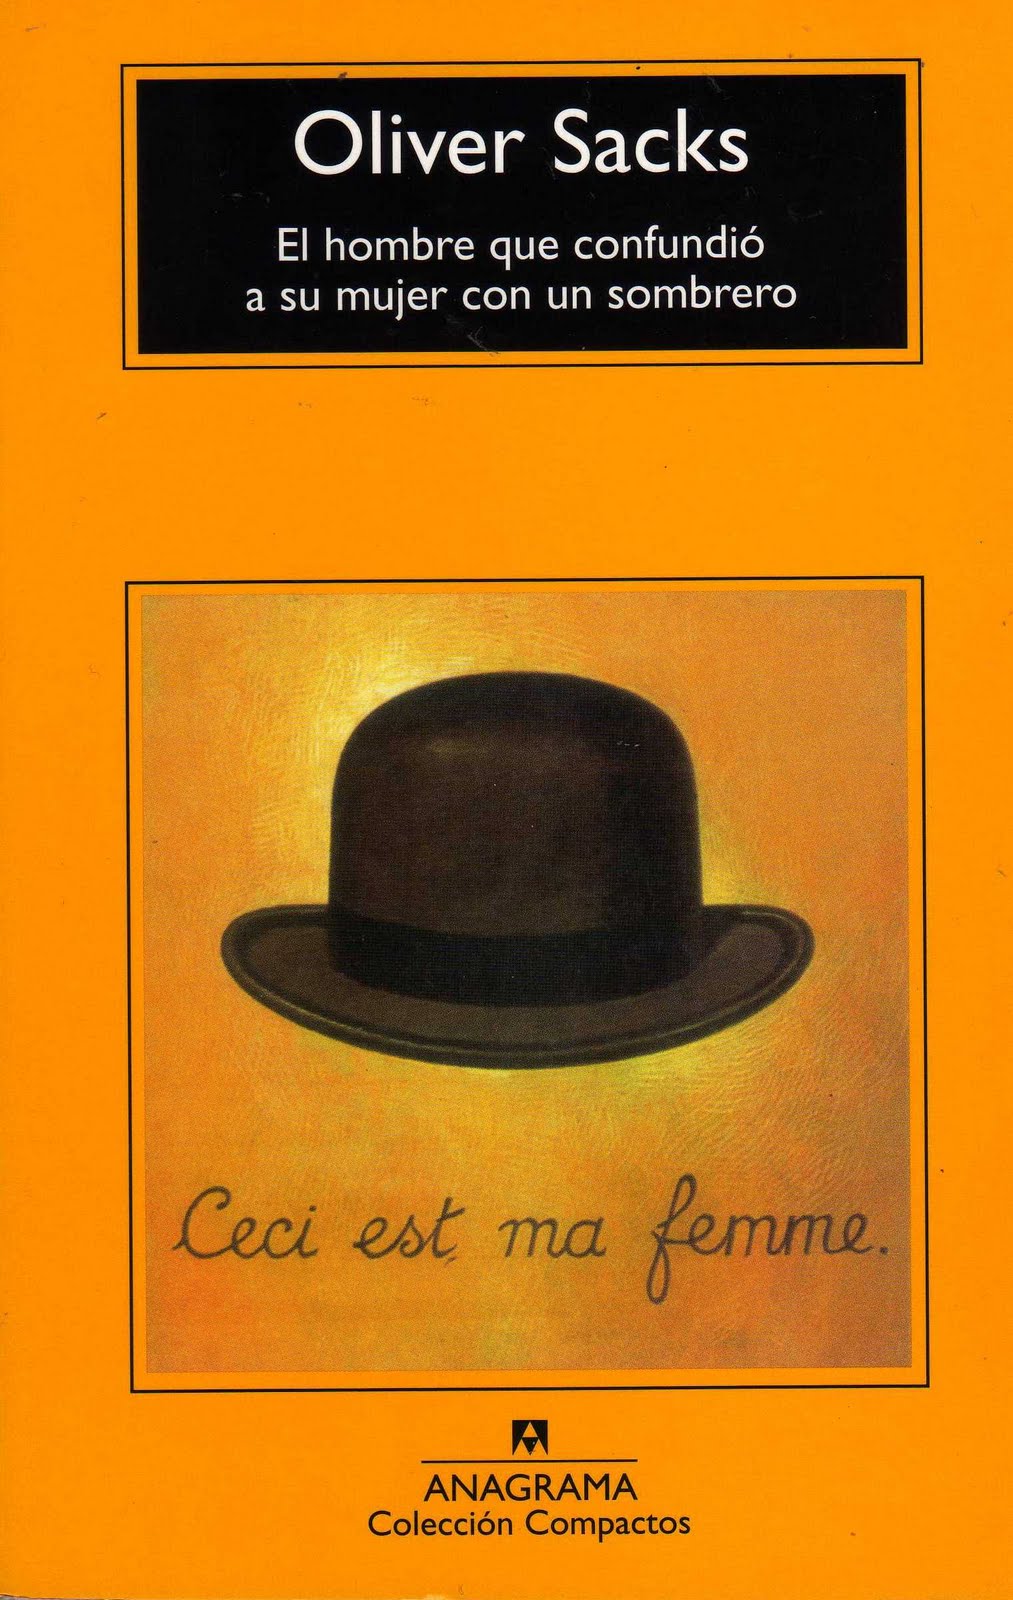 El hombre que confundió a su mujer con un sombrero by Atcomunicacion - Issuu